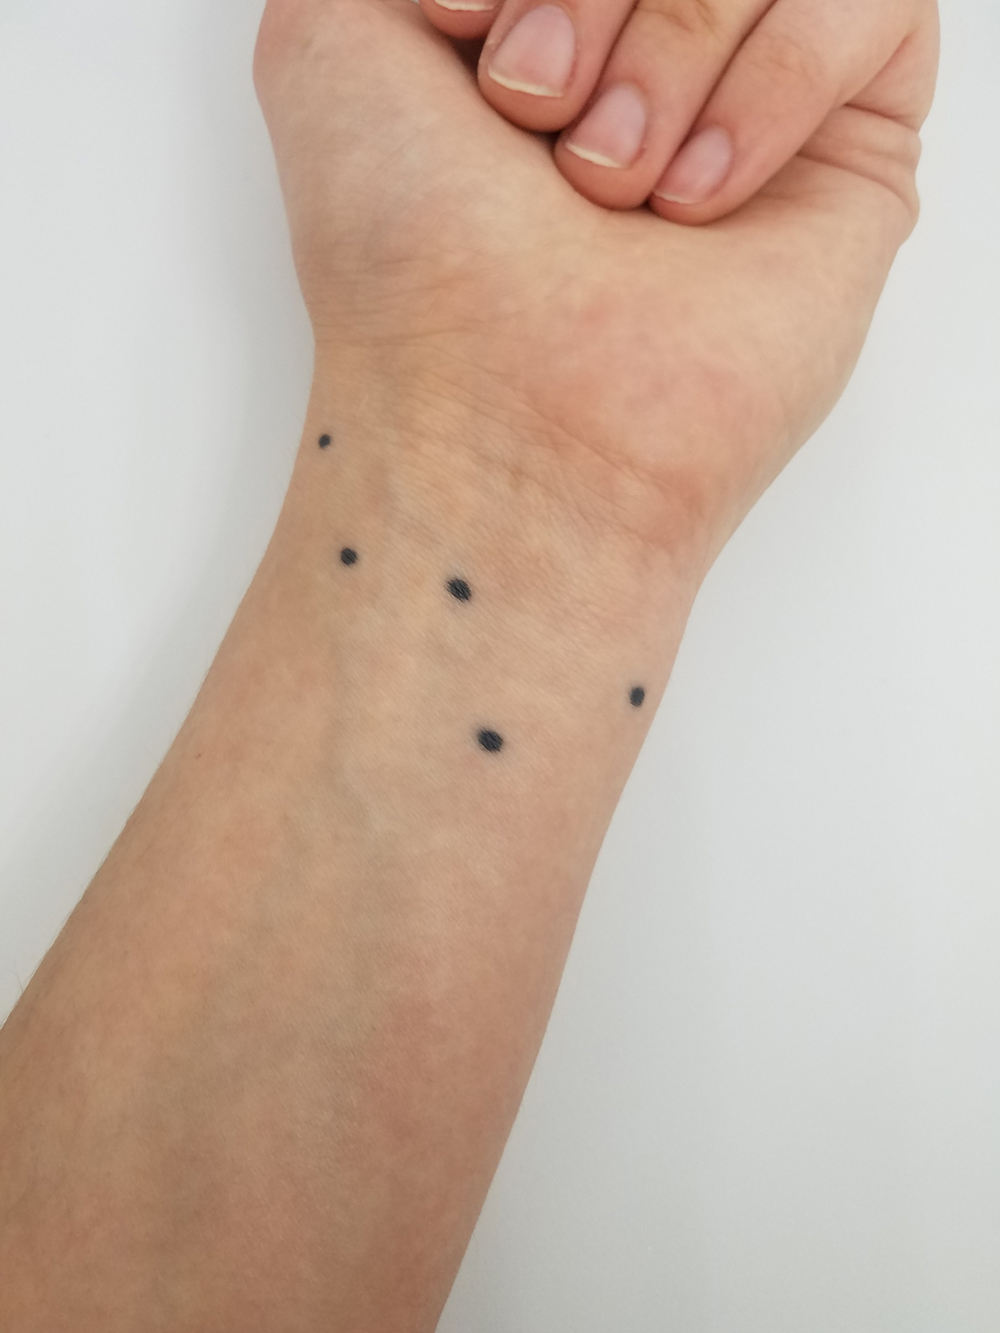 Tattoo on wrist (five black dots)